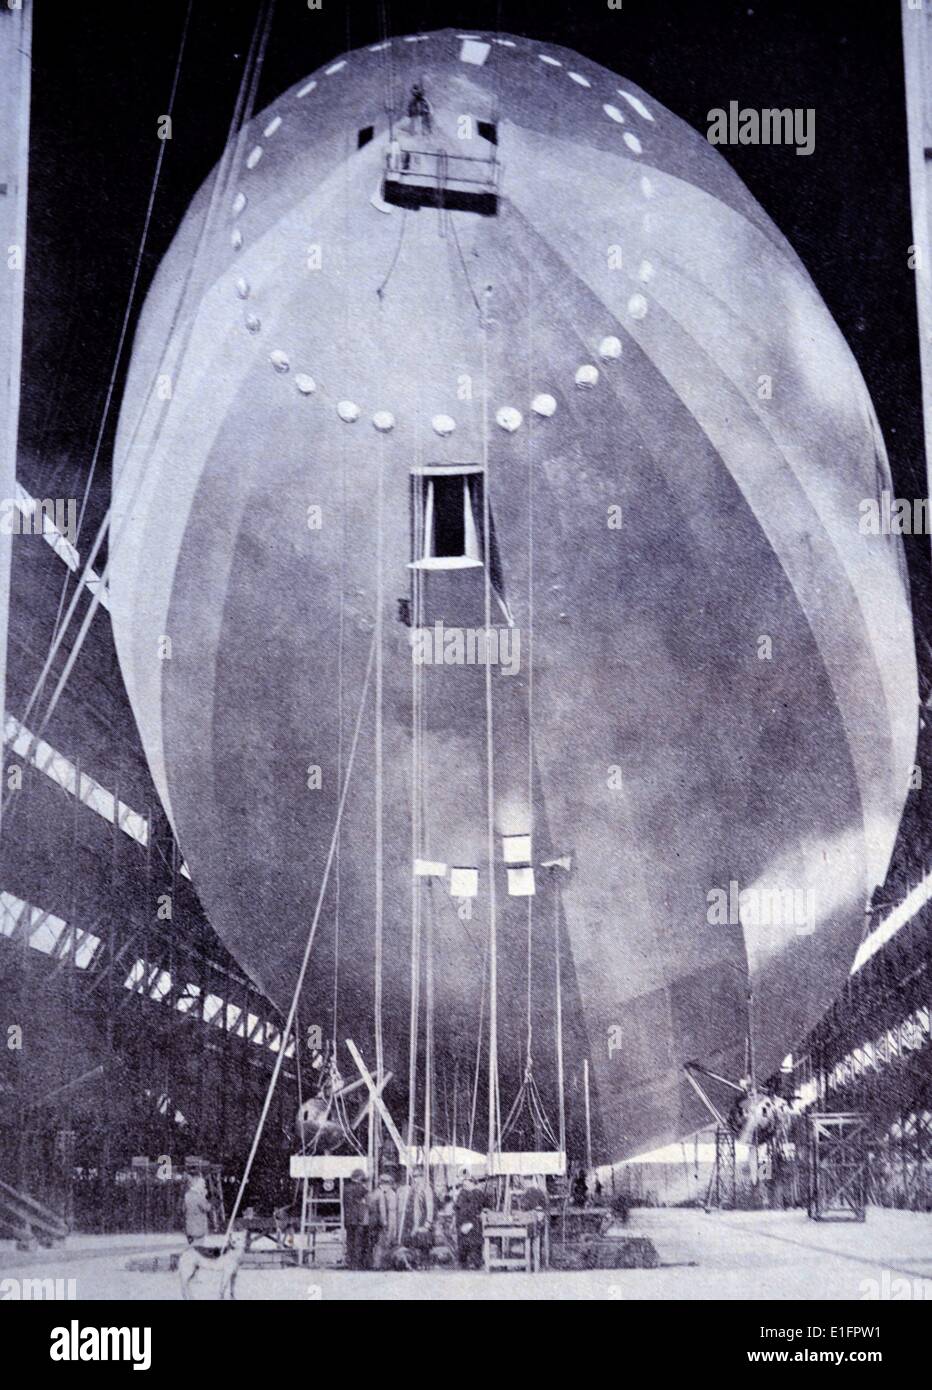 Fotografia di un palloncino di osservazione essendo costruito. Riempito di gas e palloncini sono stati utilizzati durante la Prima guerra mondiale I per le osservazioni. Foto Stock